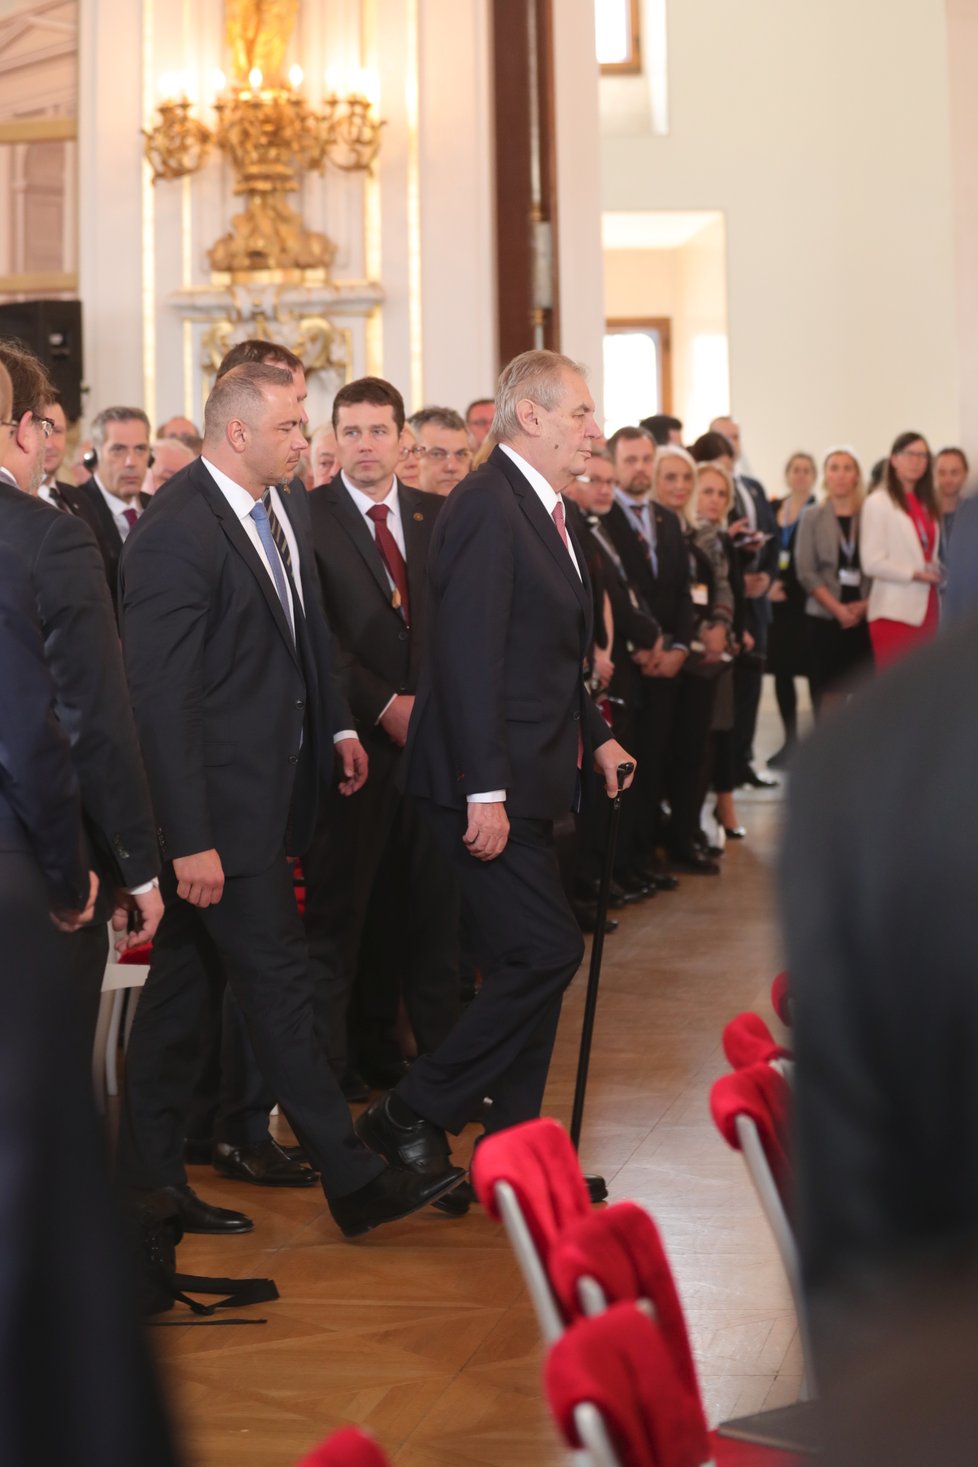 Prezident Zeman na Hradě během oslav 20 let ČR v NATO (12.3.2019)